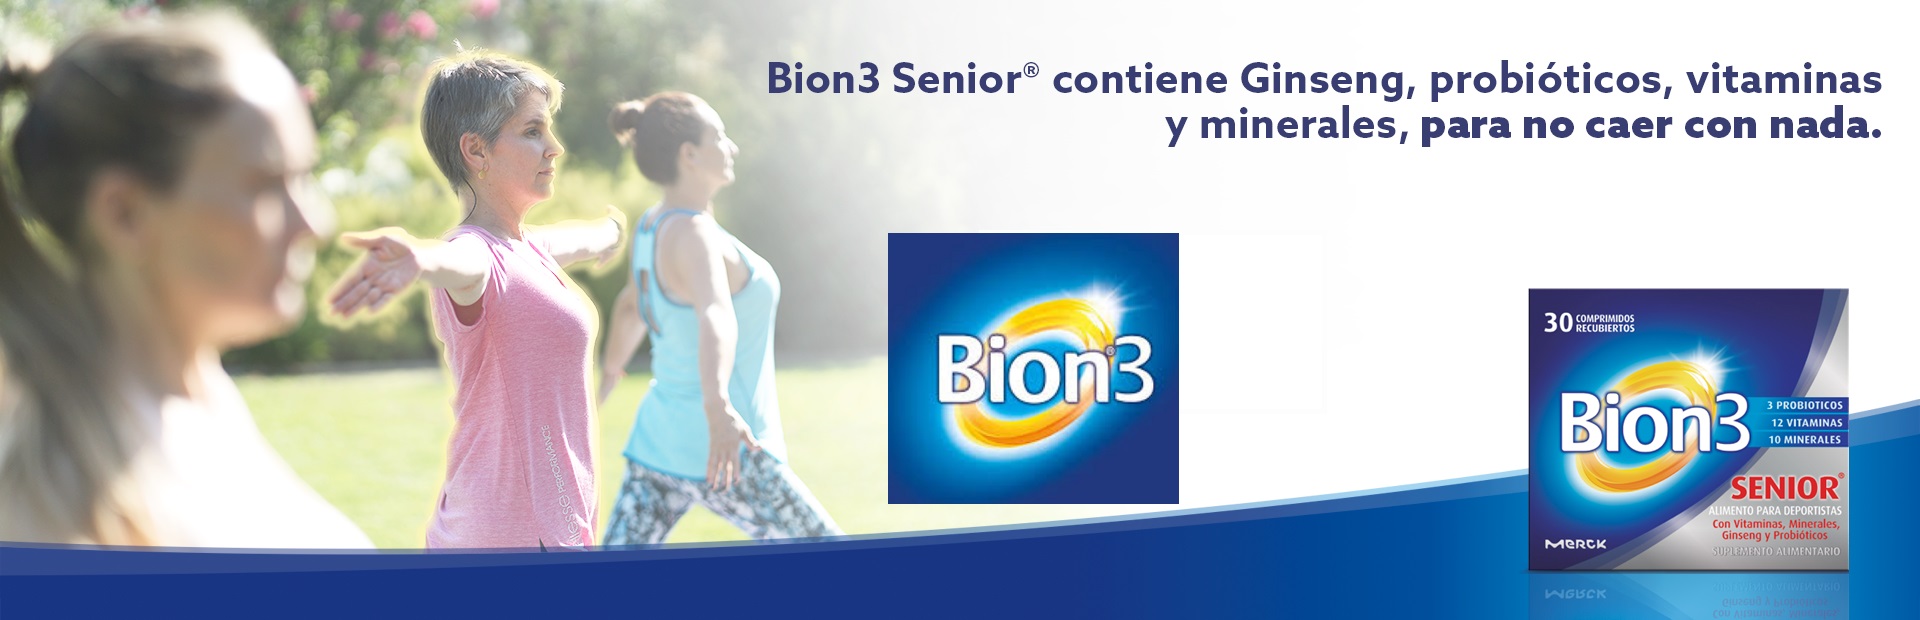 Bion3 Senior Complemento Alimenticio